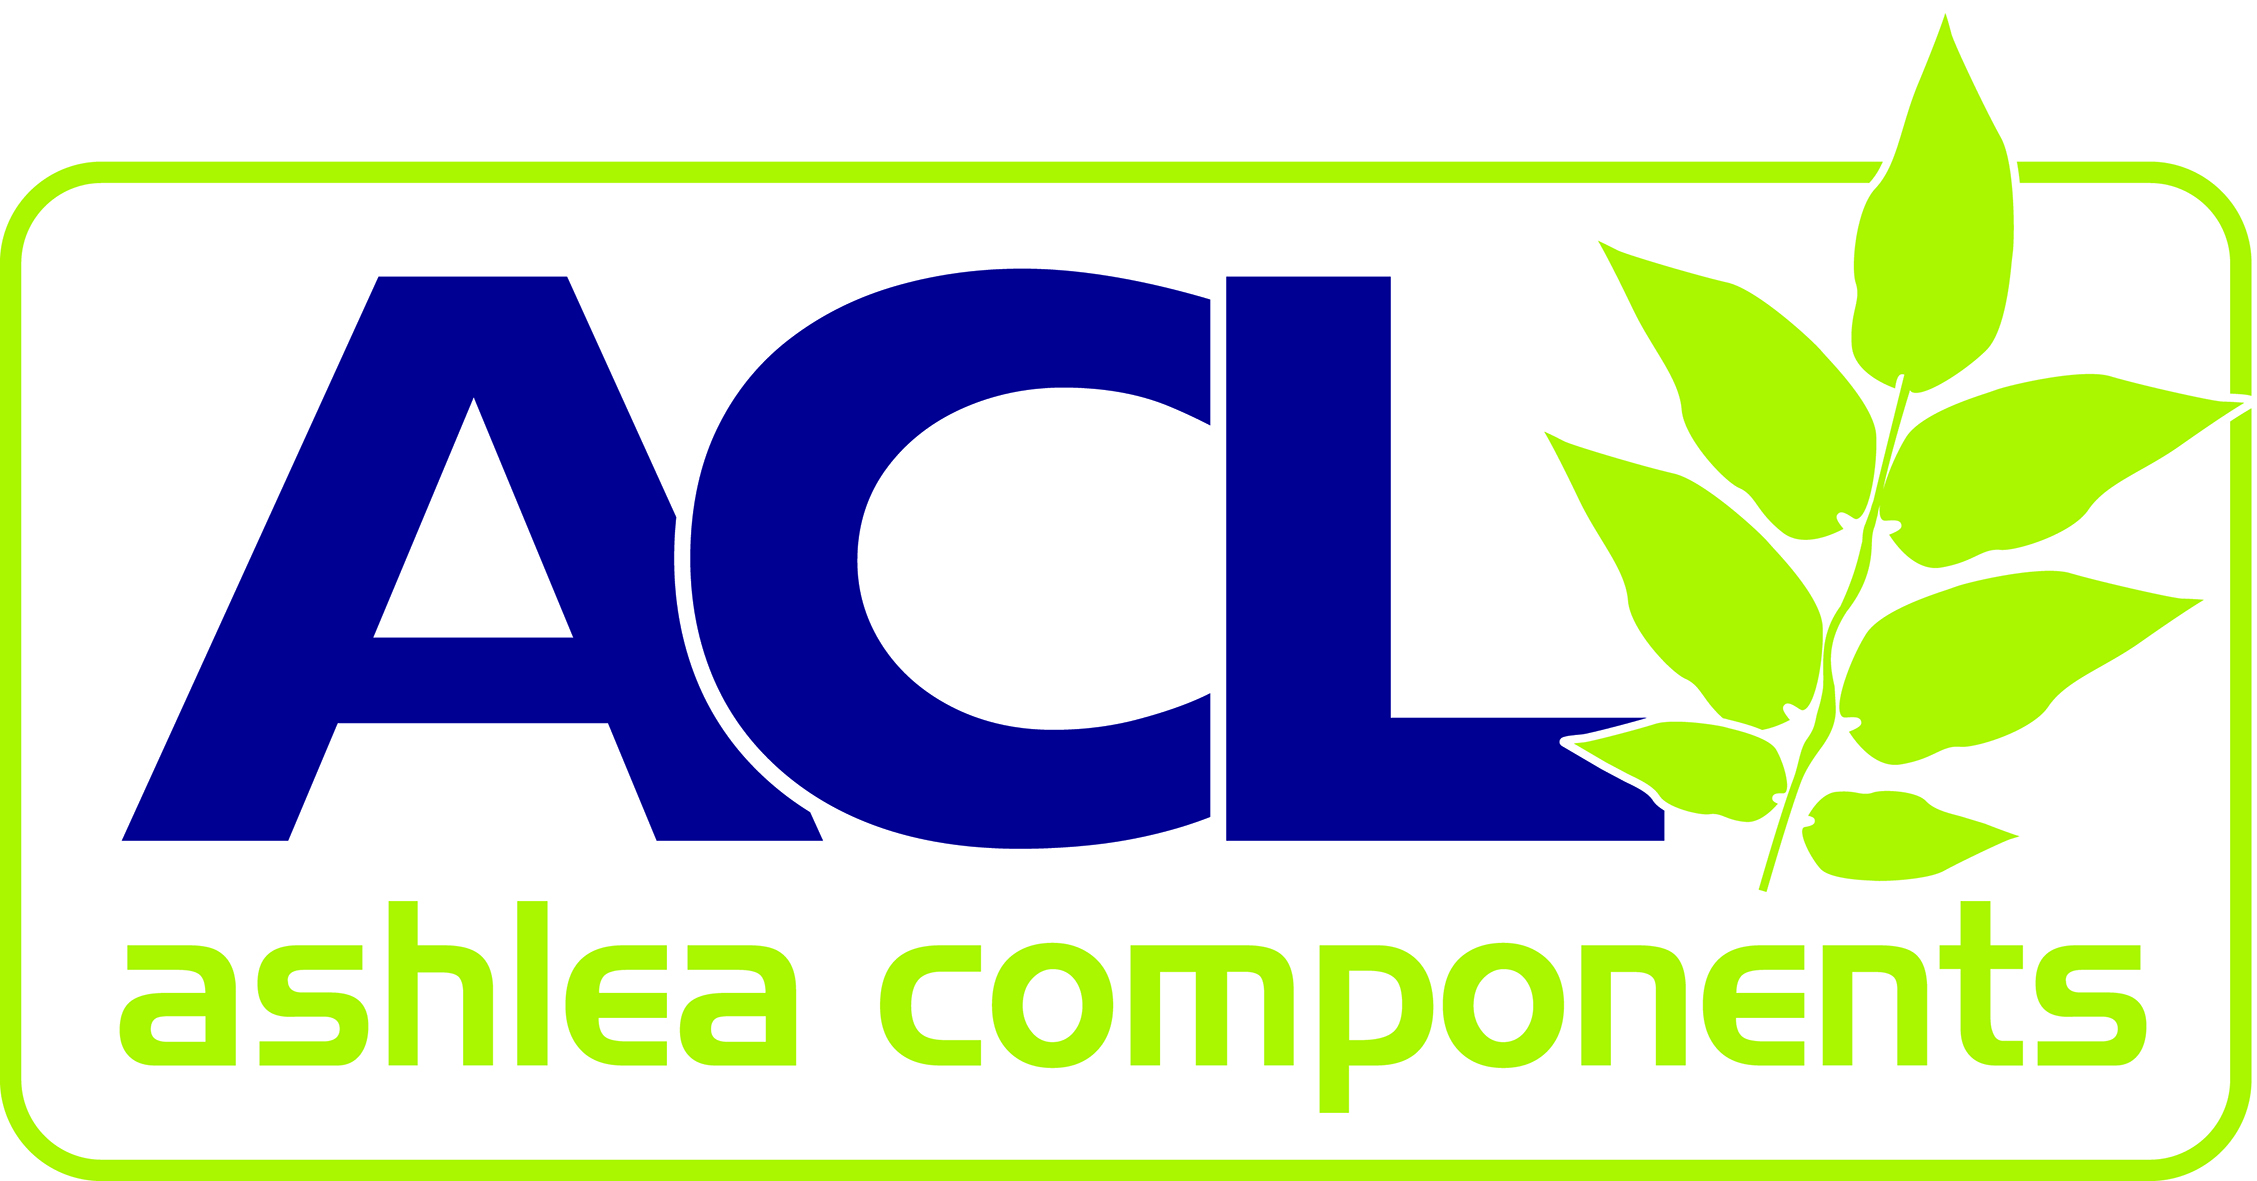 Ashlea Components Ltd